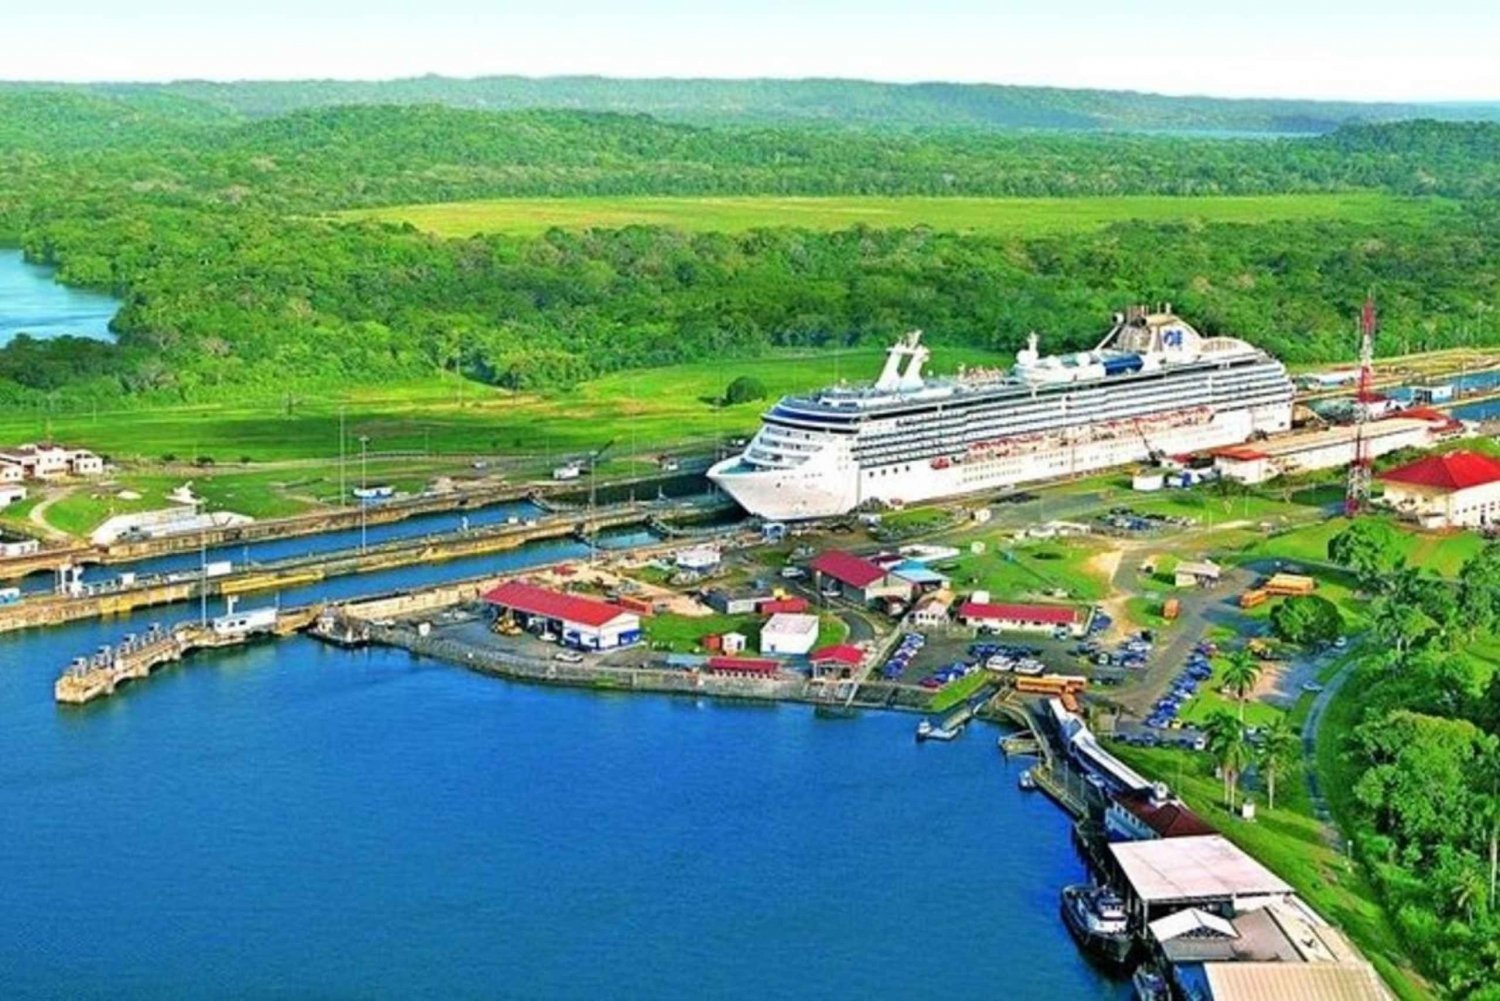 Ciudad de Panamá: Recorrido en escala con lo más destacado del Canal y la ciudad